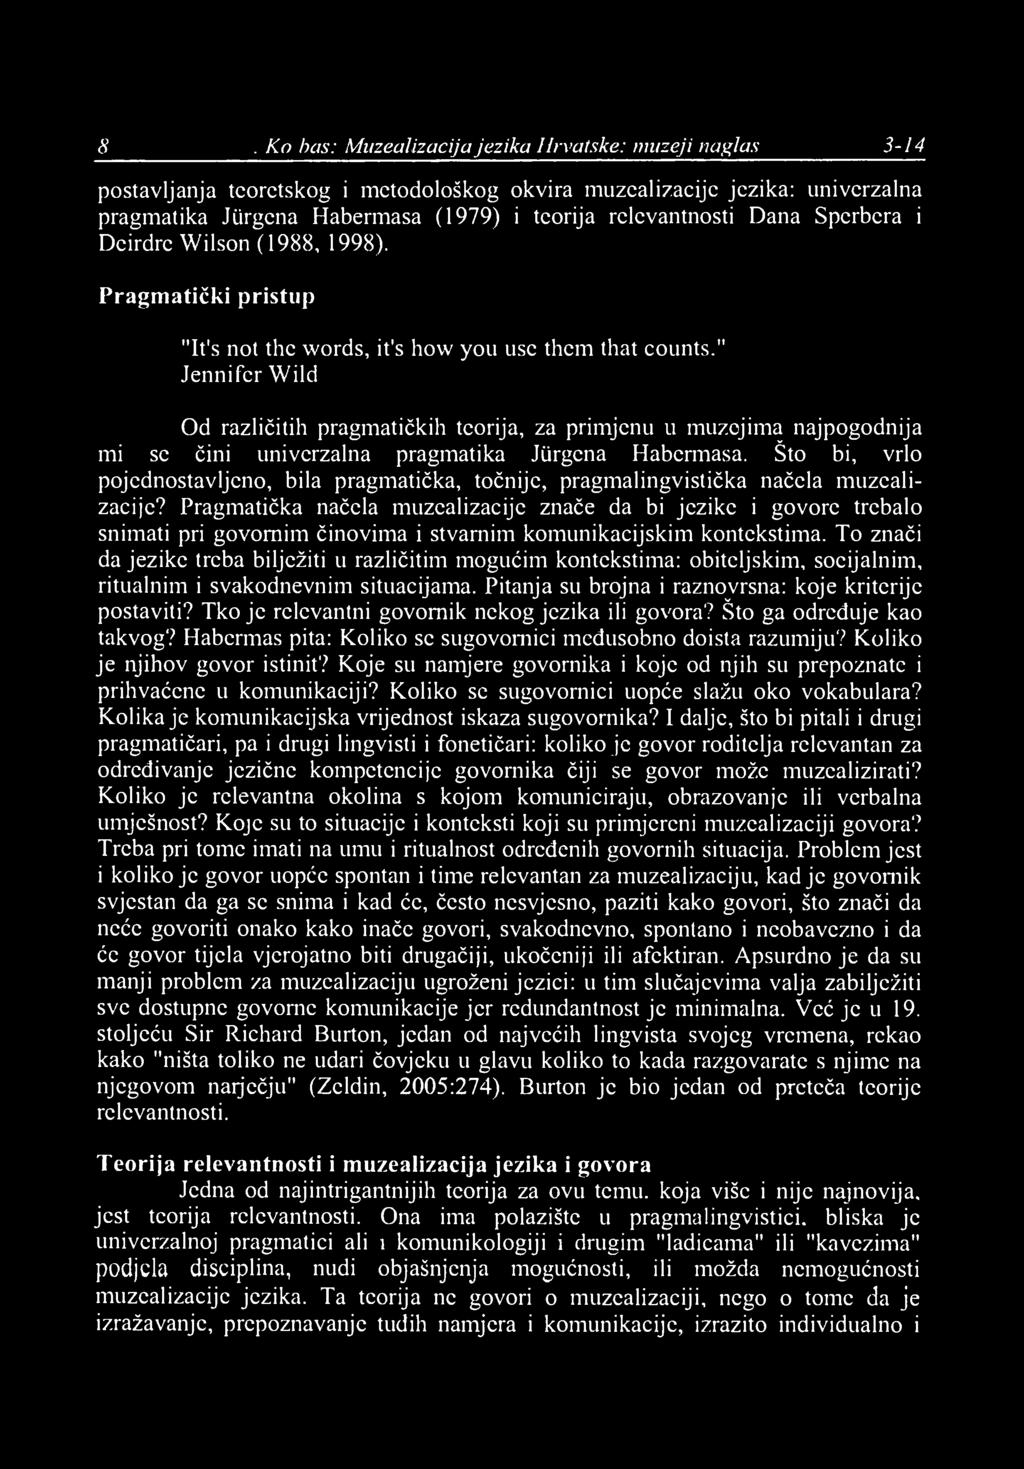 8 I. Ko/bas: Muzealizacija jezika Hrvatske: muzeji naglas 3-14 postavljanja teoretskog i metodološkog okvira muzealizacije jezika: univerzalna pragmatika Jiirgena Habermasa (1979) i teorija